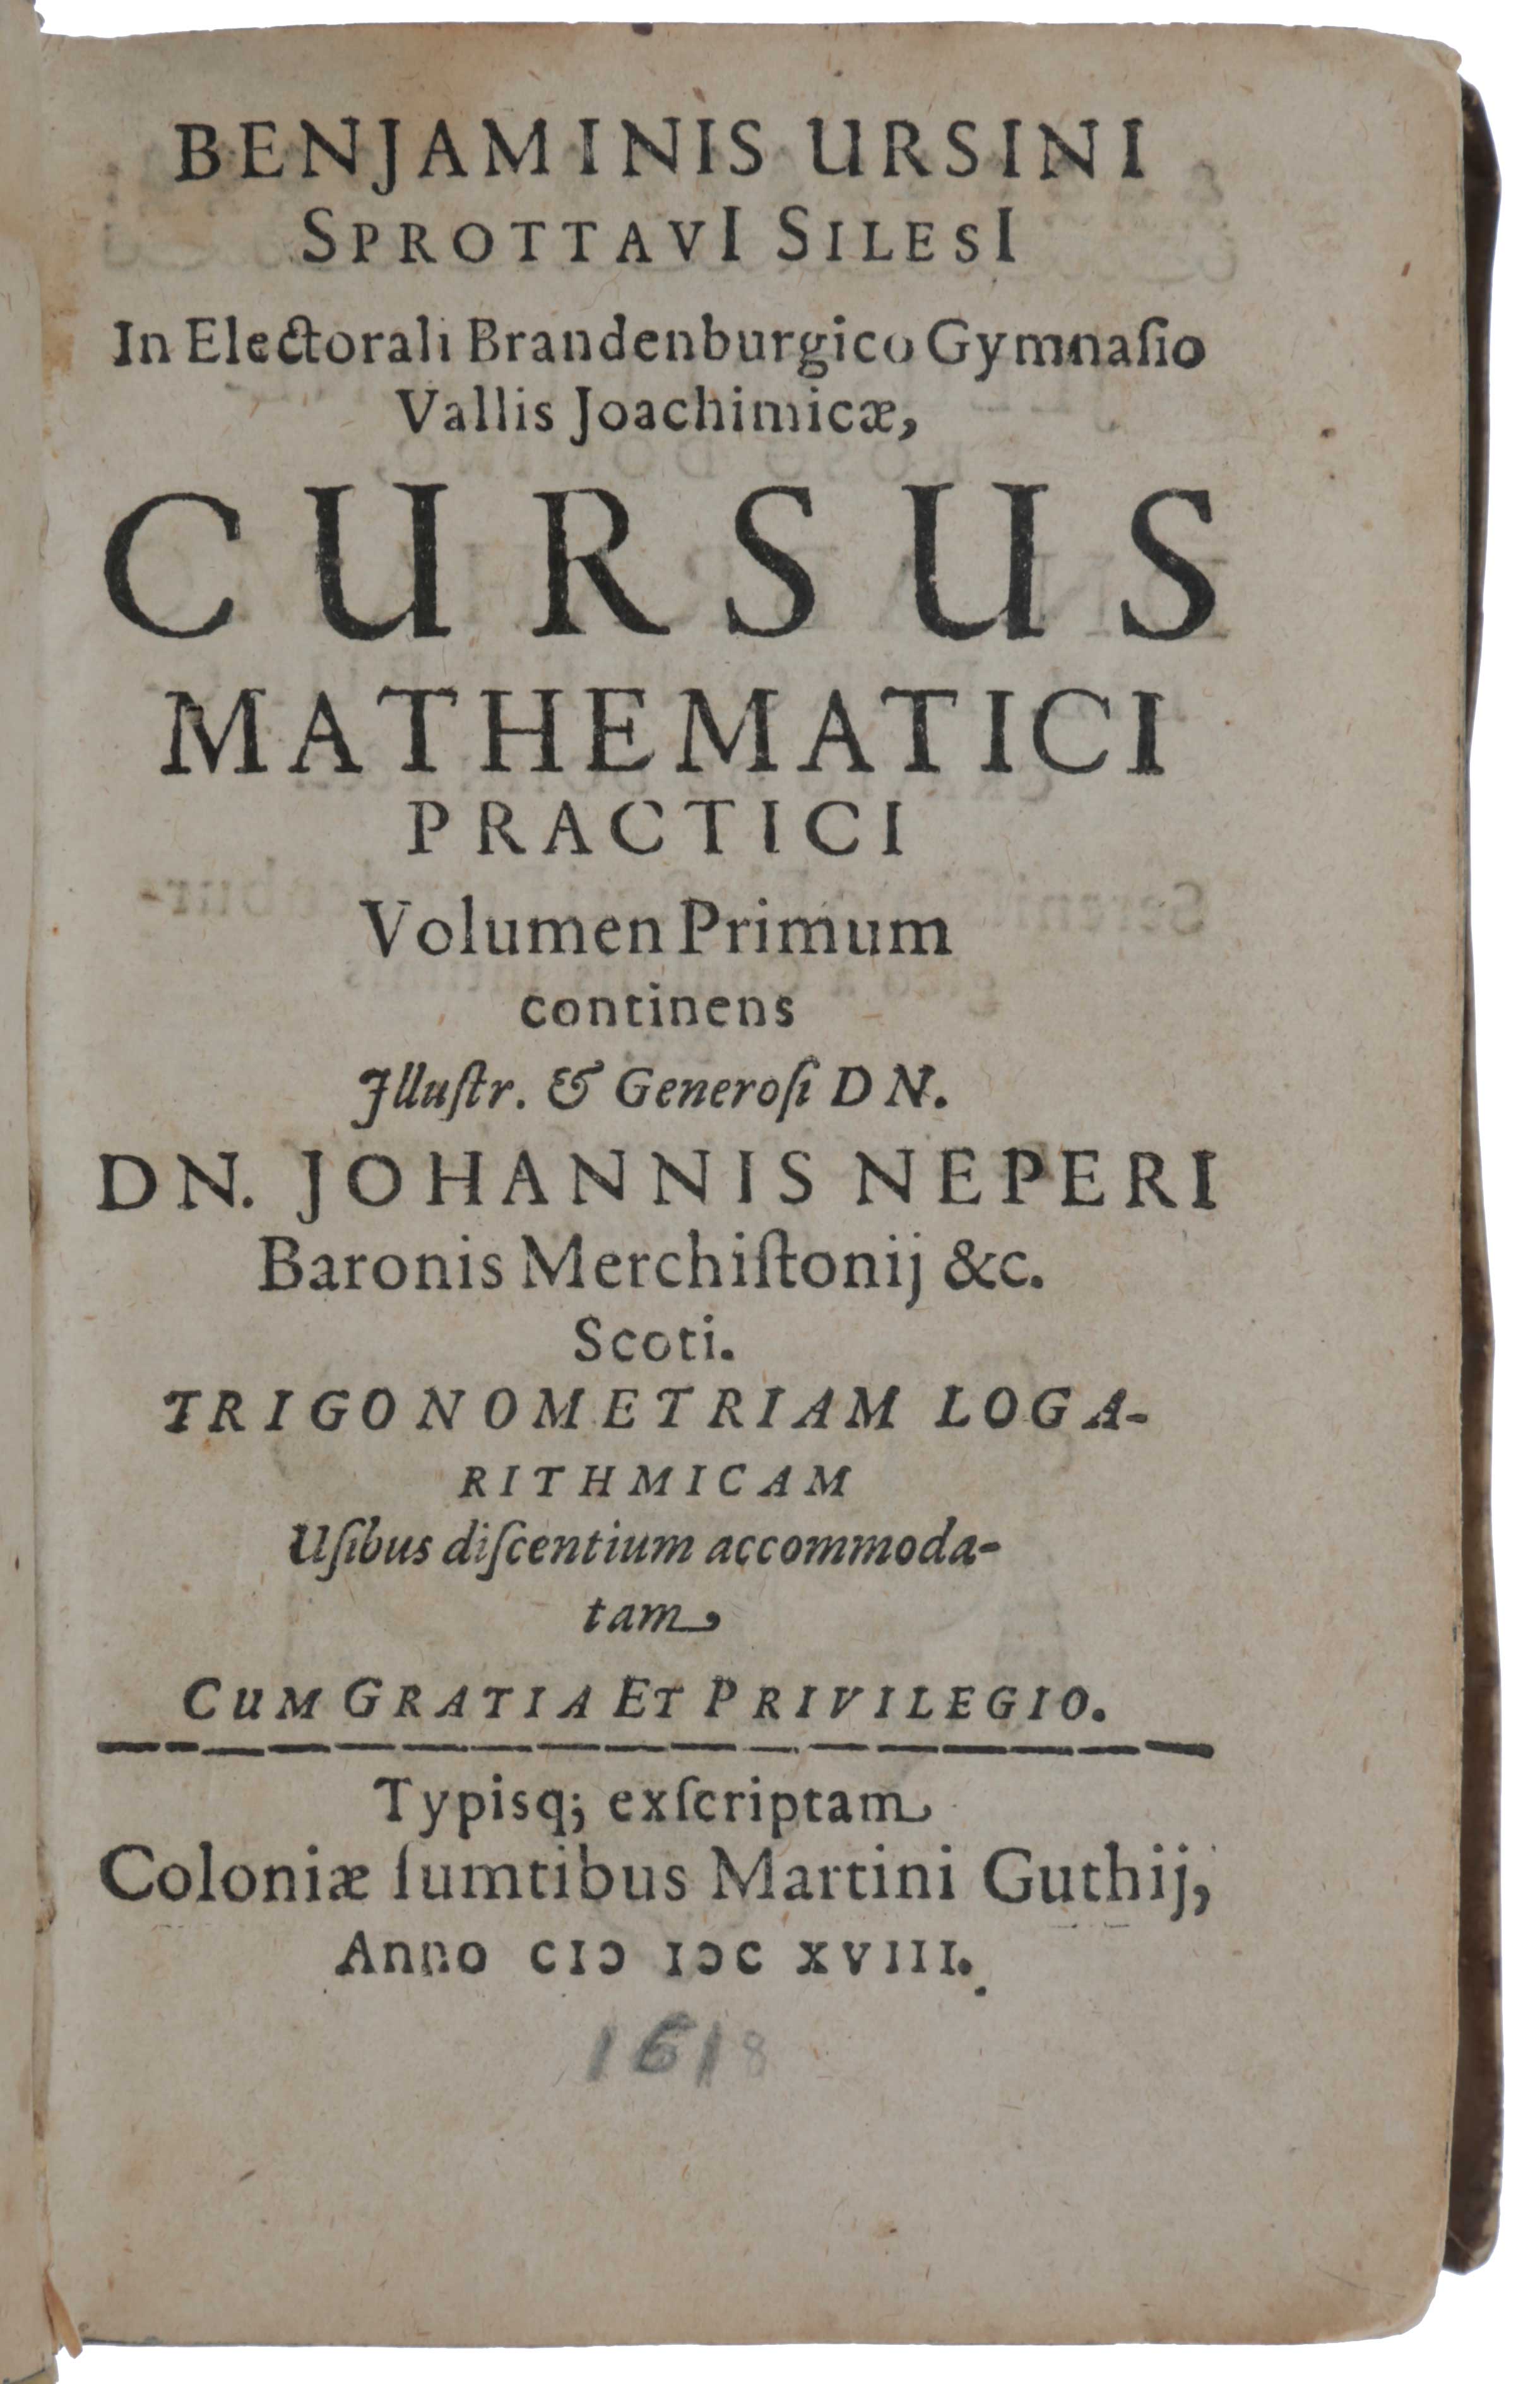 Item #4862 Cursus Mathematici Practici Volumen Primum [all published]: continens Illustr. & Generosi Dn. Dn. Johannis Neperi Baronis Merchistonii &c. Scoti. Trigonometriam Logarithmicam. Benjamin URSINUS.